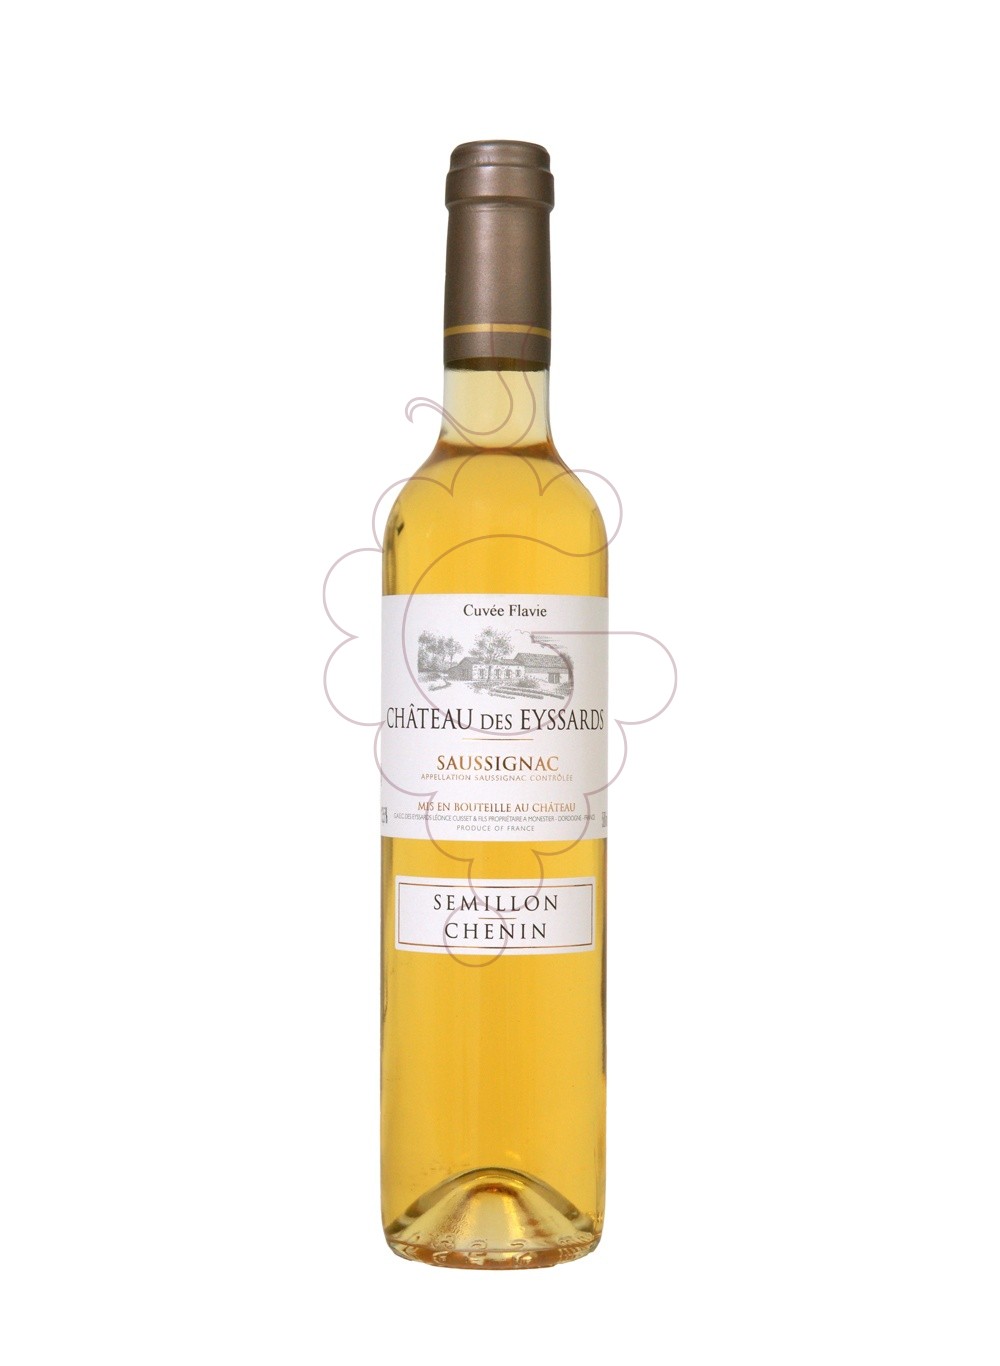 Foto Ch des Eyssards Cuvée Flavie Saussignac vino generoso